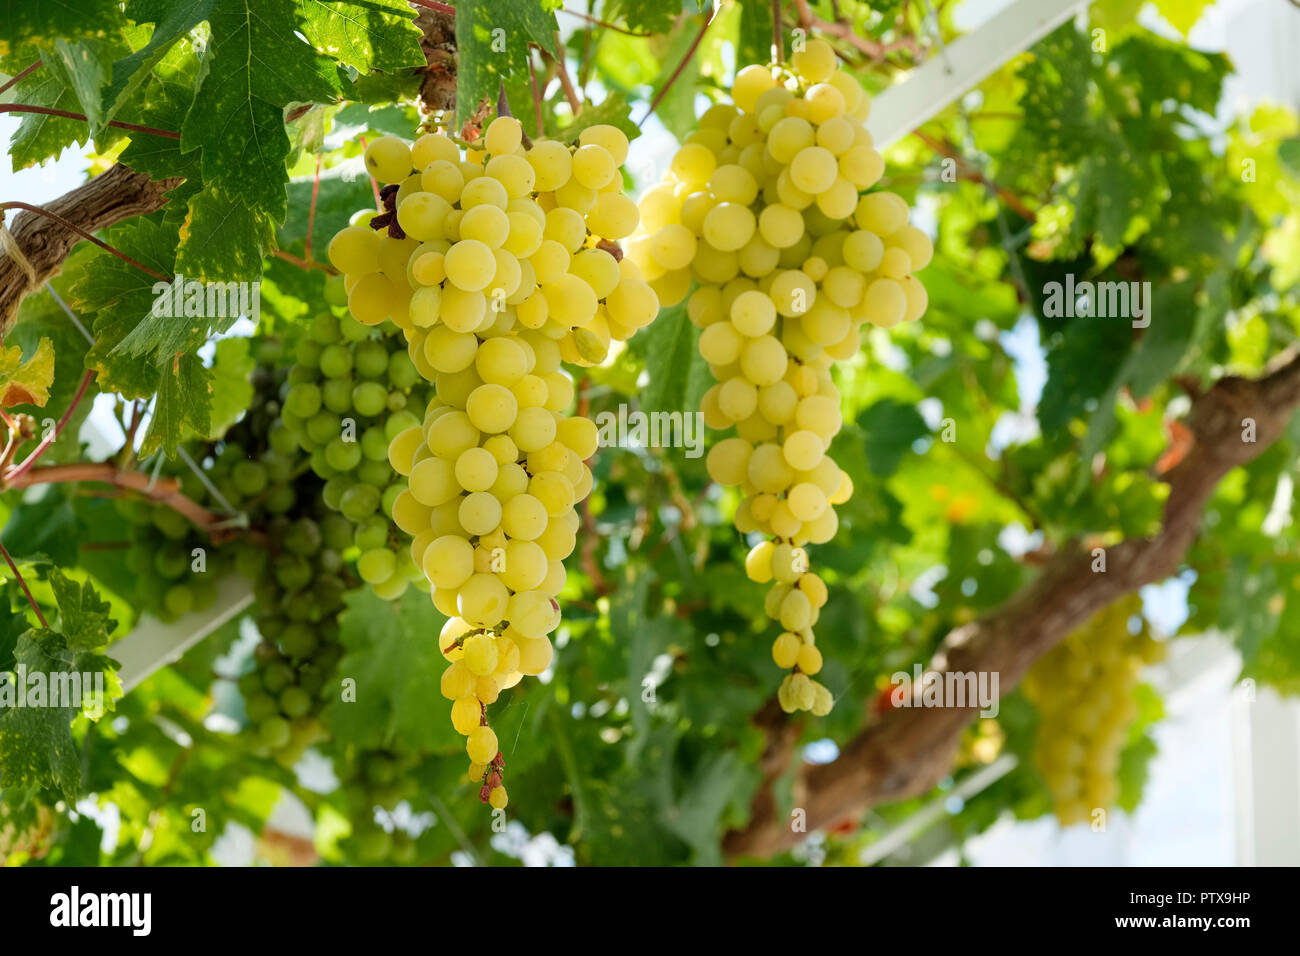 Green les raisins de table (Vitis vinifera) accrochée à la vigne en serre, Sussex, England, UK Banque D'Images